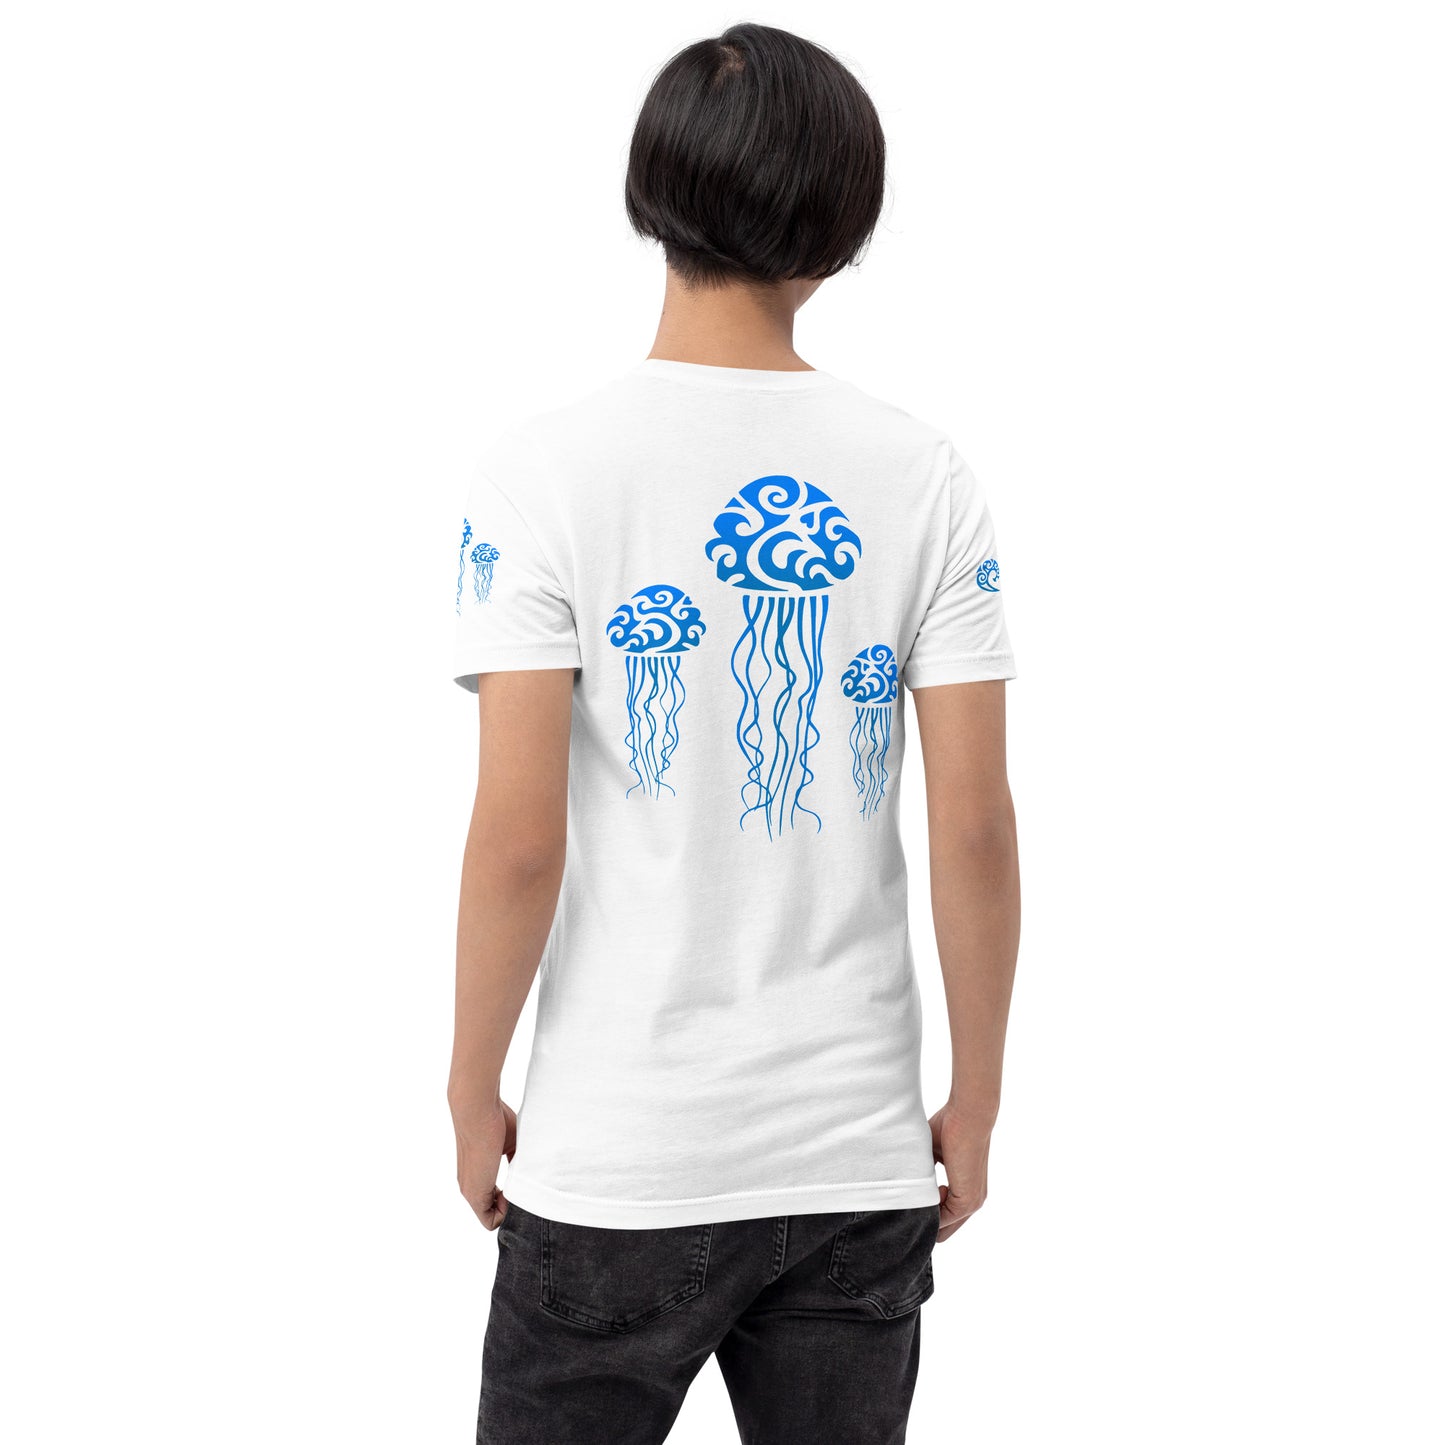 Polynesian T-shirt Jellyfish Tribal Samoan For Men and Women Back Blue on White